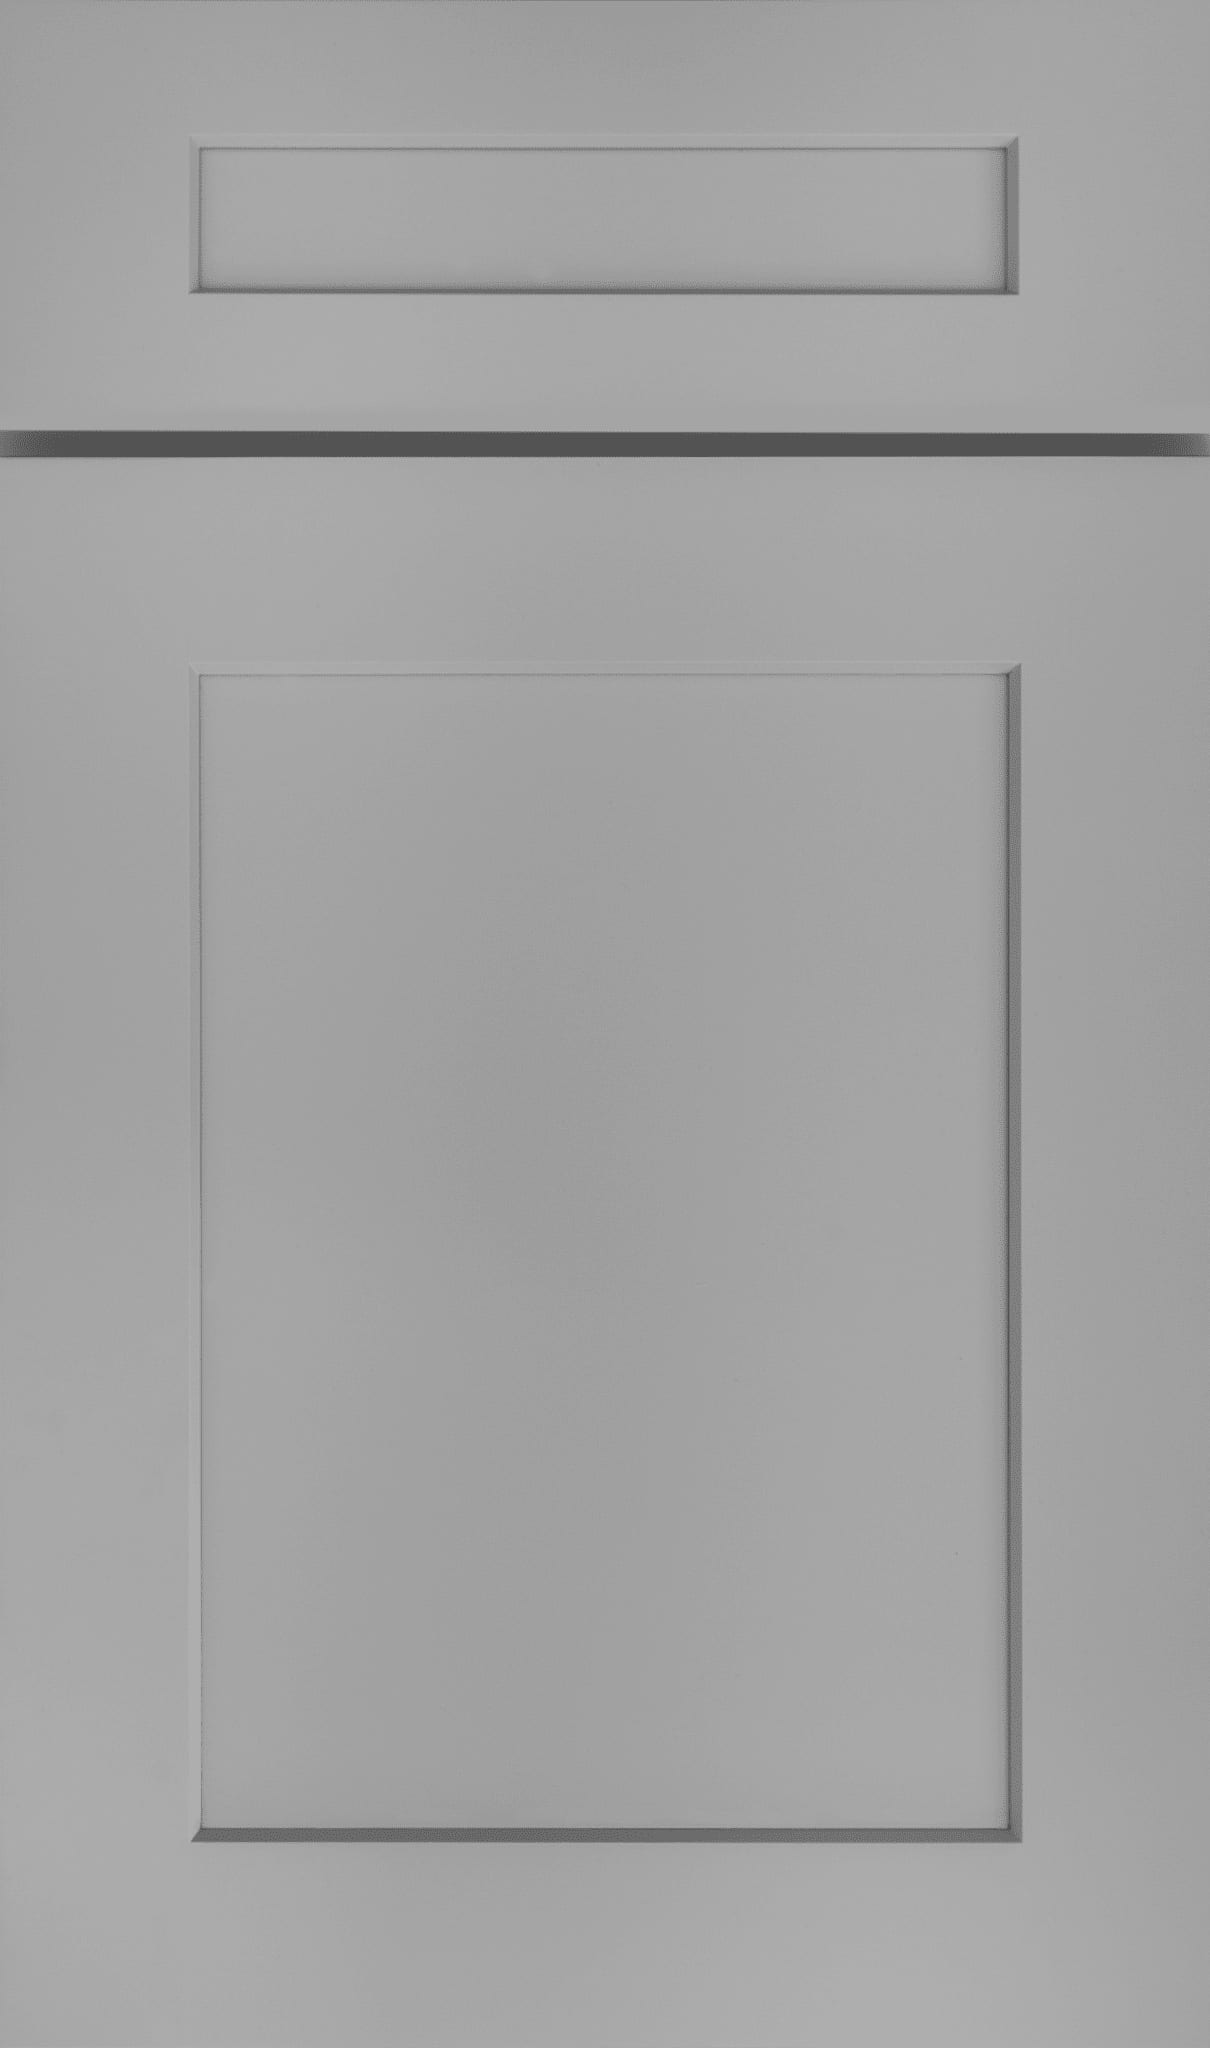 S5 Castle Grey cabinet door for kitchen and bathroom